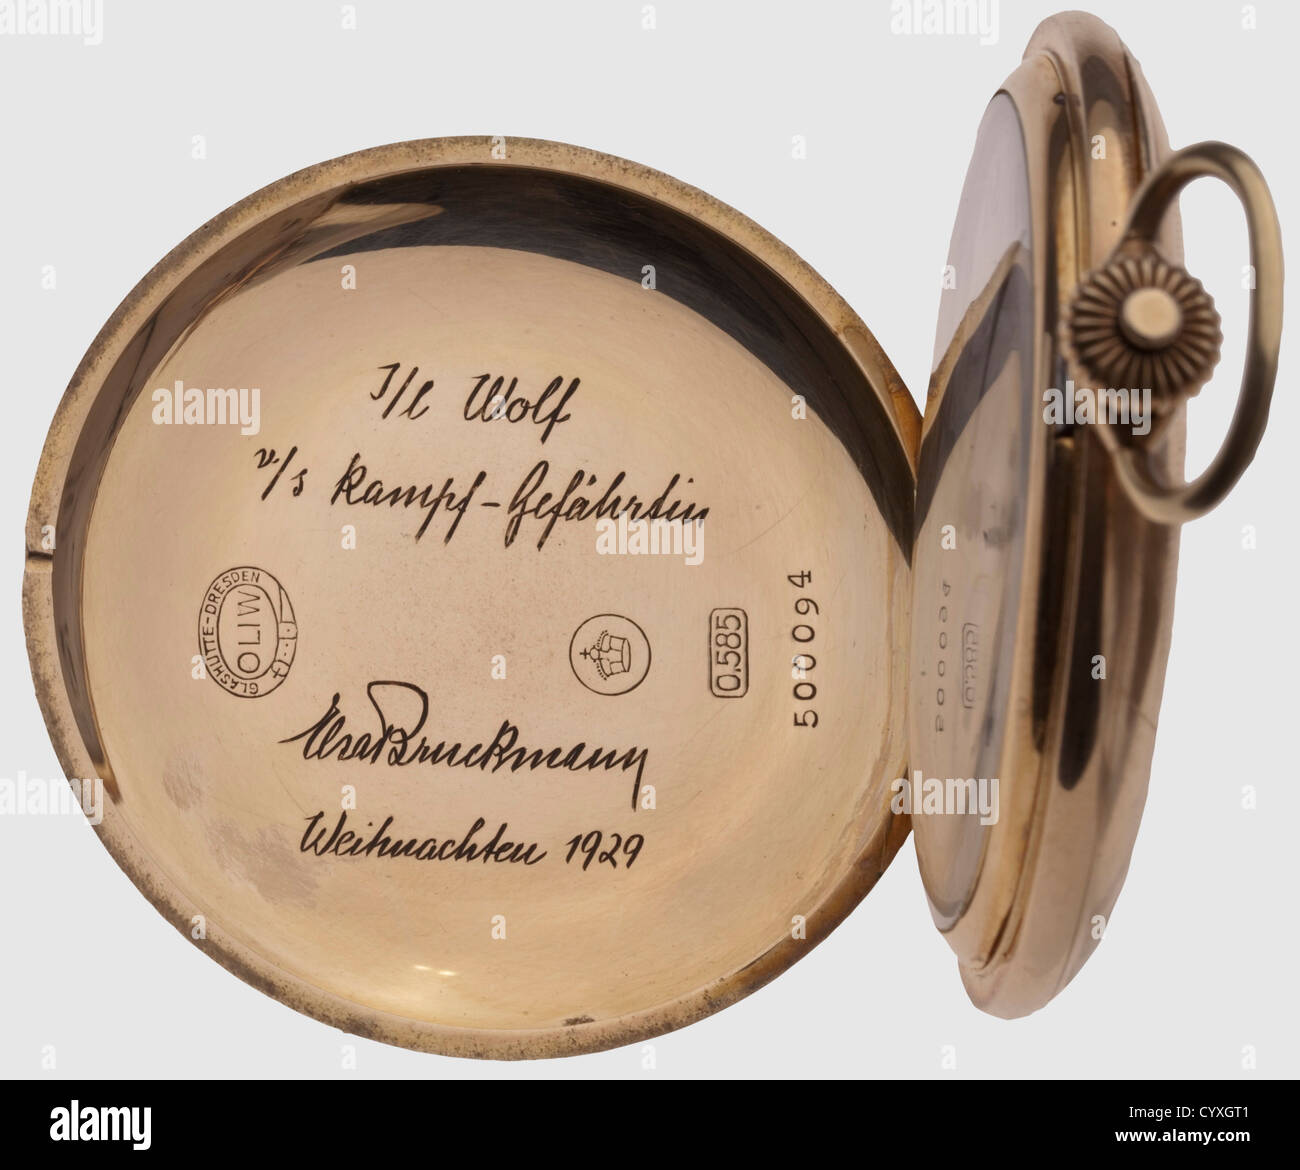 Adolf Hitler, cadeau doré montre de poche Elsa Bruckmann, Noël 1929 Maker "Deutsche Uhrenfabrikation Oliw Glashütte i./sa". Le boîtier en or avec une gravure fine et ondulée et un monogramme entrelacé 'AH', le couvercle avant avec le poinçon de fabrication 'Glashütte-Dresden Oliw', le timbre de finition '0,585'et le numéro '500094' ainsi que la gravure de présentation 'I/l Wolf v/s Kampf-Gefährtin Elsa Bruckmann Weihnachten 1929'. Cadran en émail blanc avec chiffres arabes en noir et bleu, petites mains de lancette et bleutées. Doré du historique,historique,1920,20e siècle,NS,National Soci,droits additionnels-Clearences-non disponible Banque D'Images